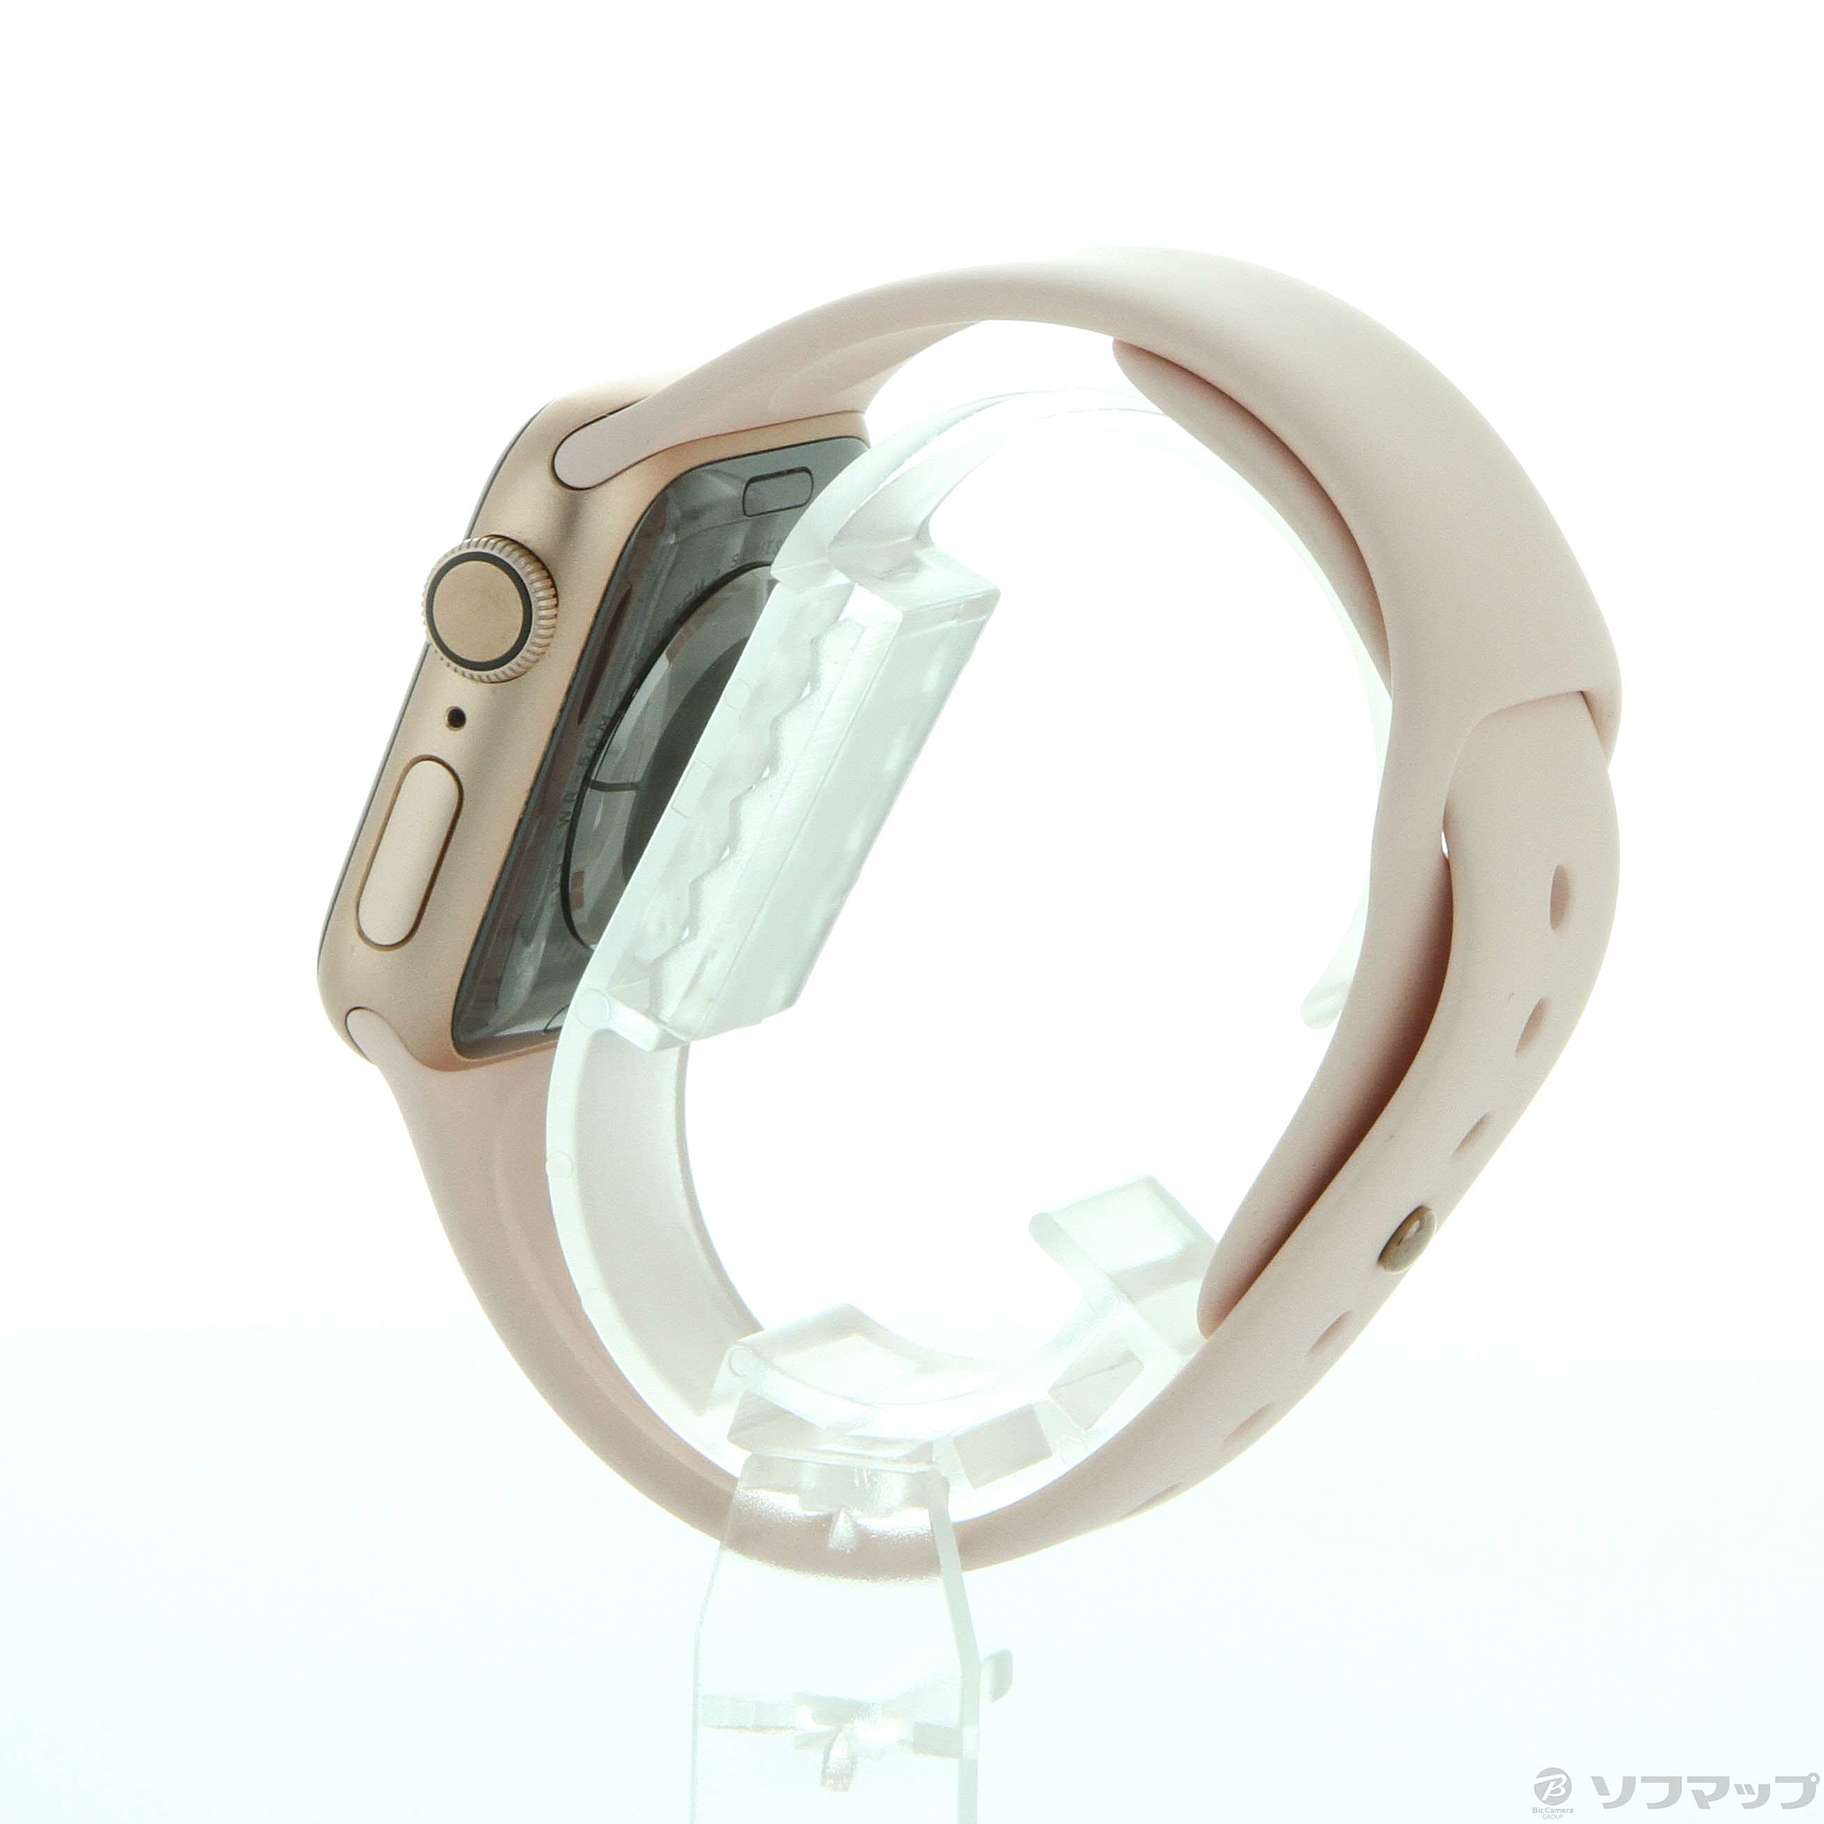 中古】Apple Watch Series 4 GPS 40mm ゴールドアルミニウムケース ...